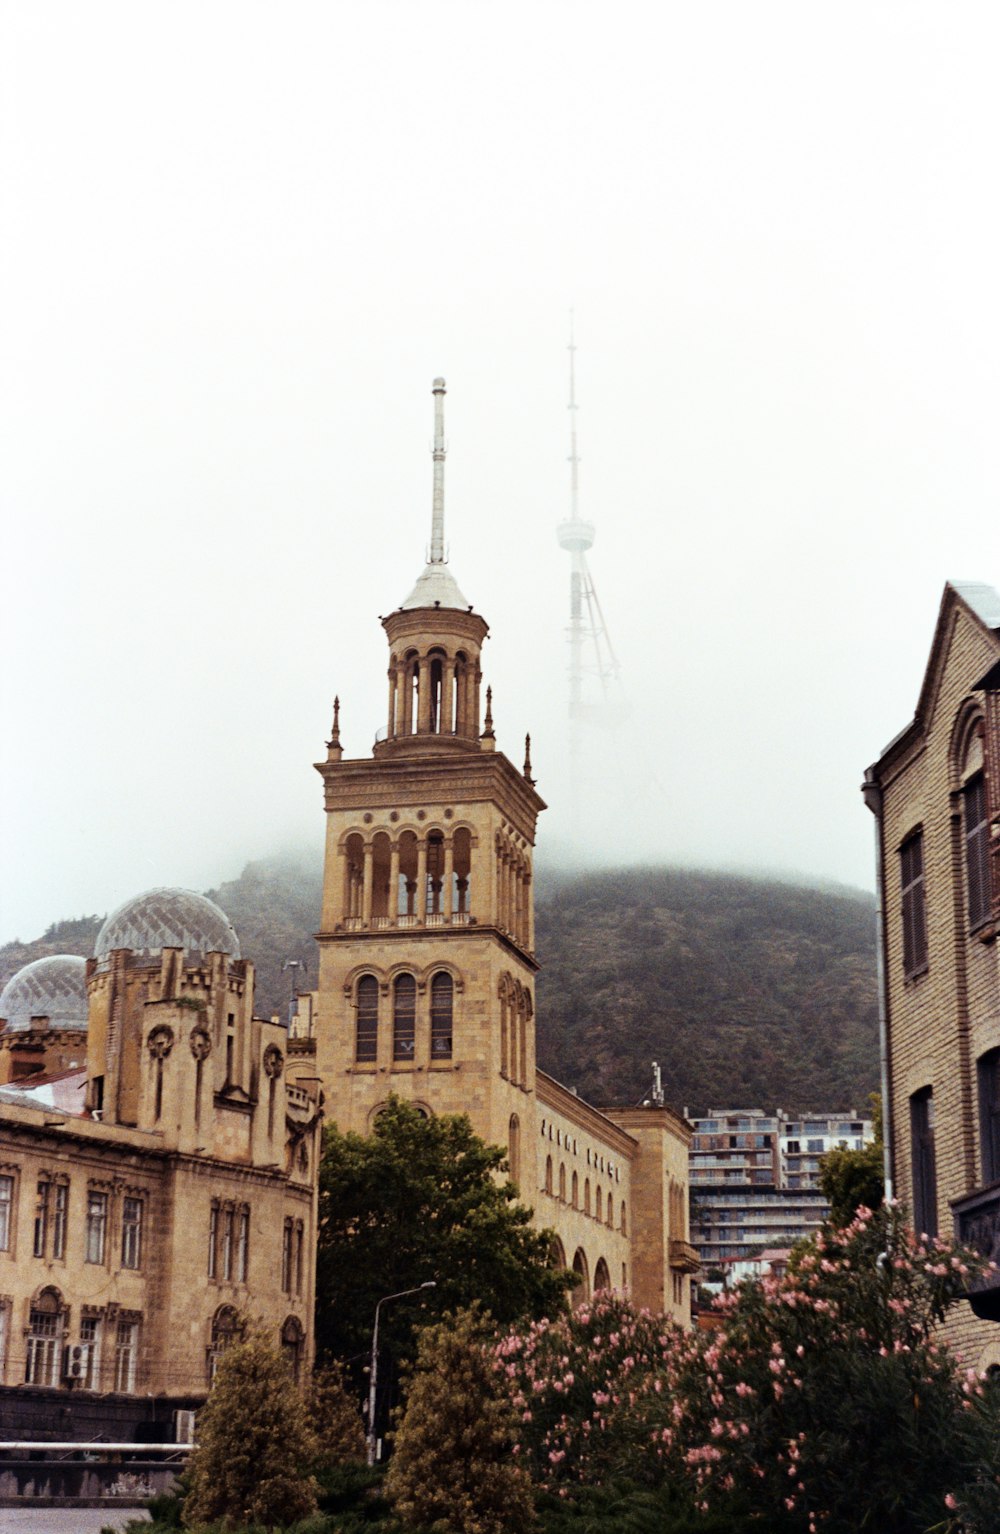 un grand bâtiment surmonté d’une tour de l’horloge